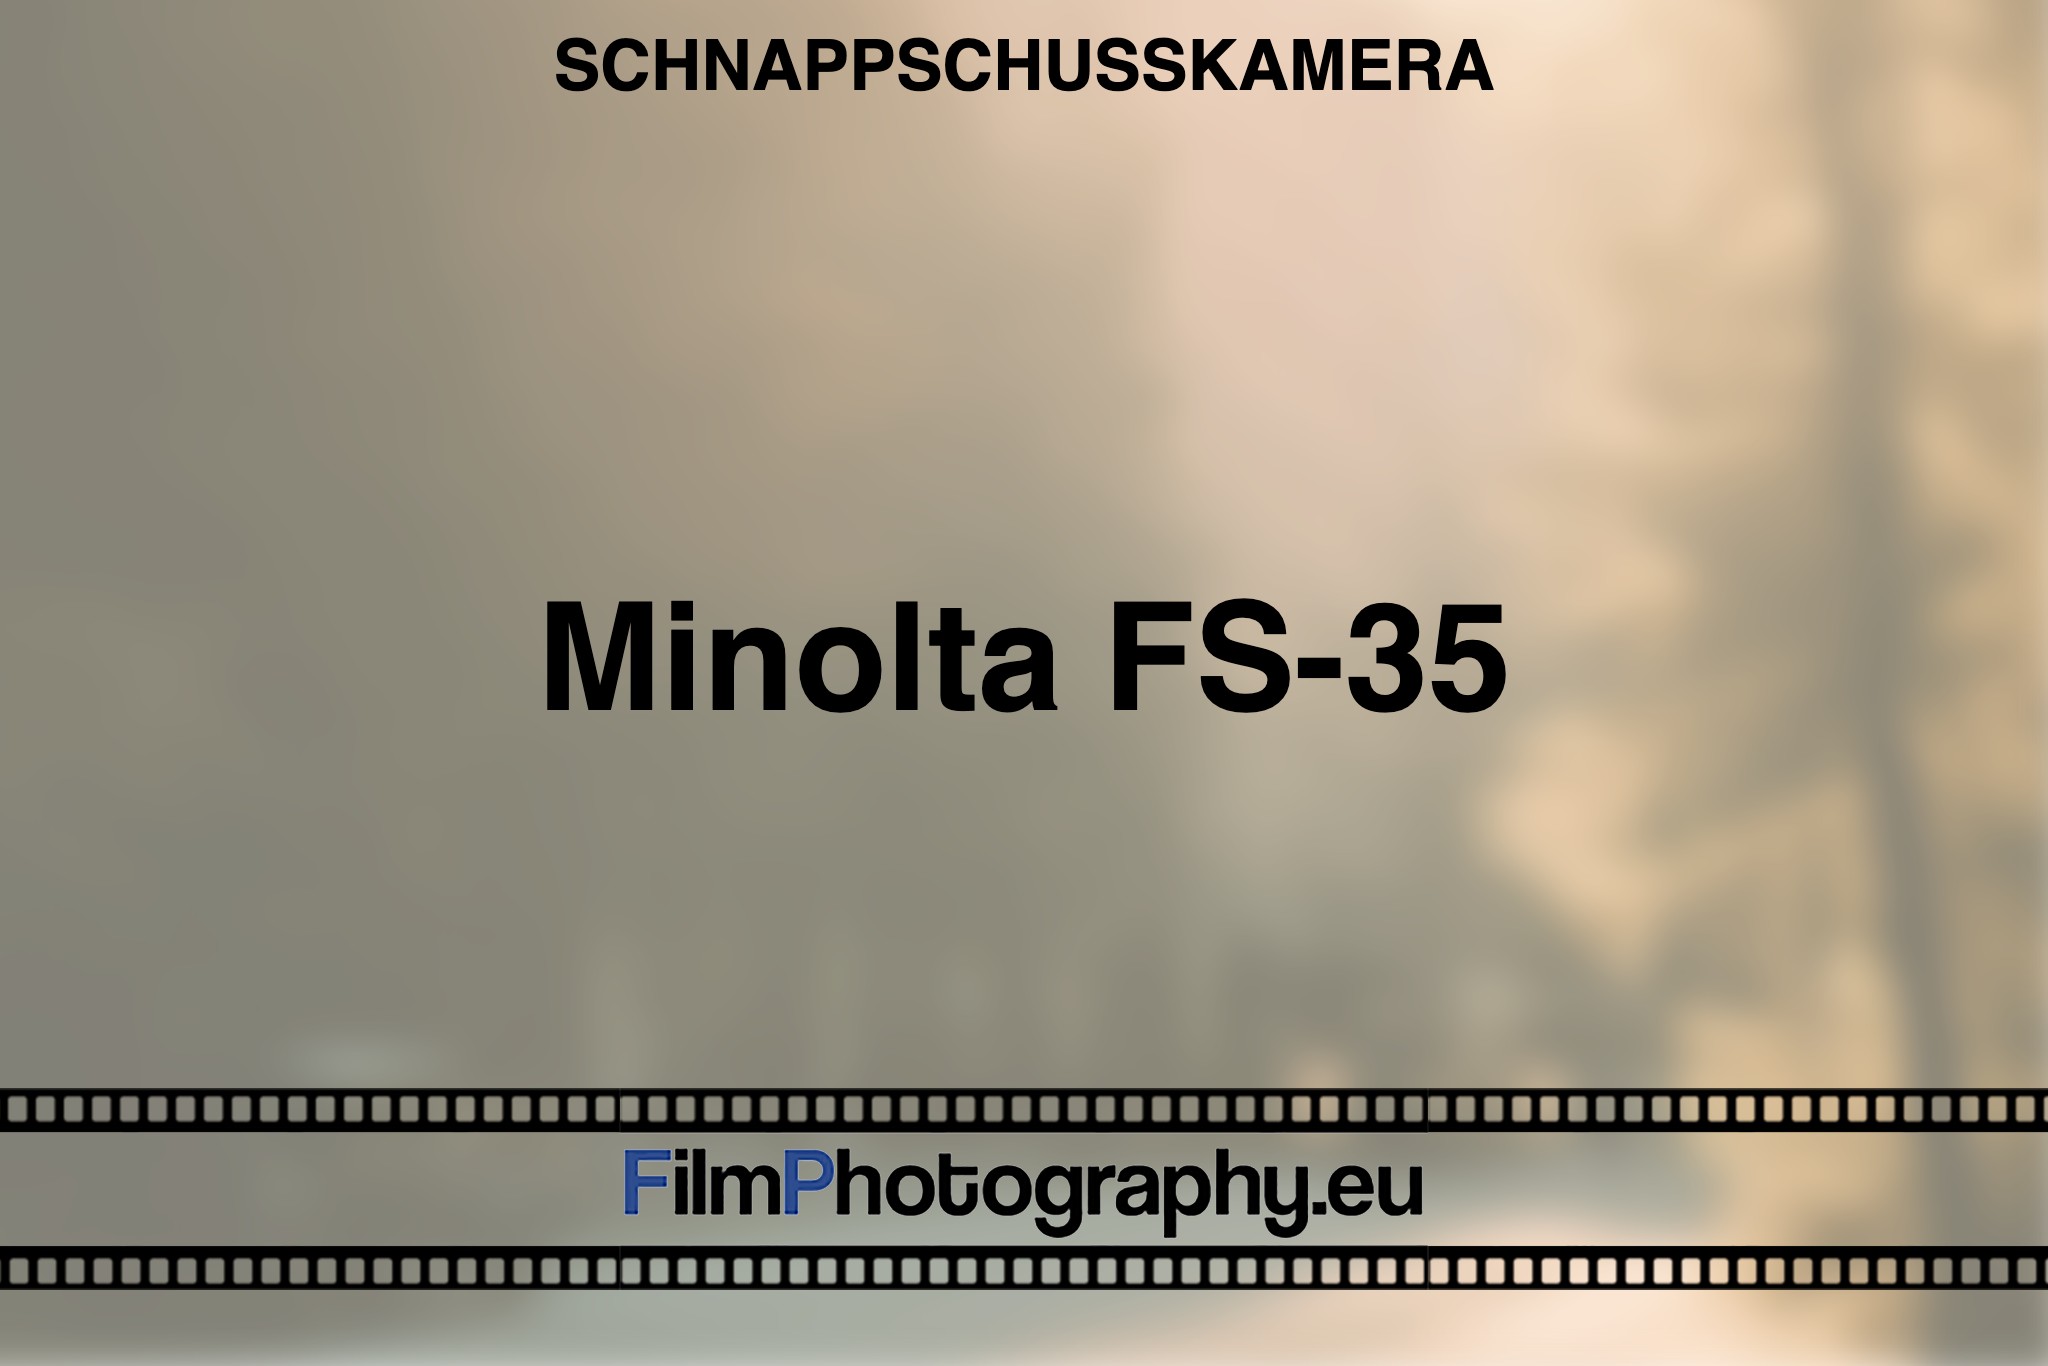 minolta-fs-35-schnappschusskamera-bnv